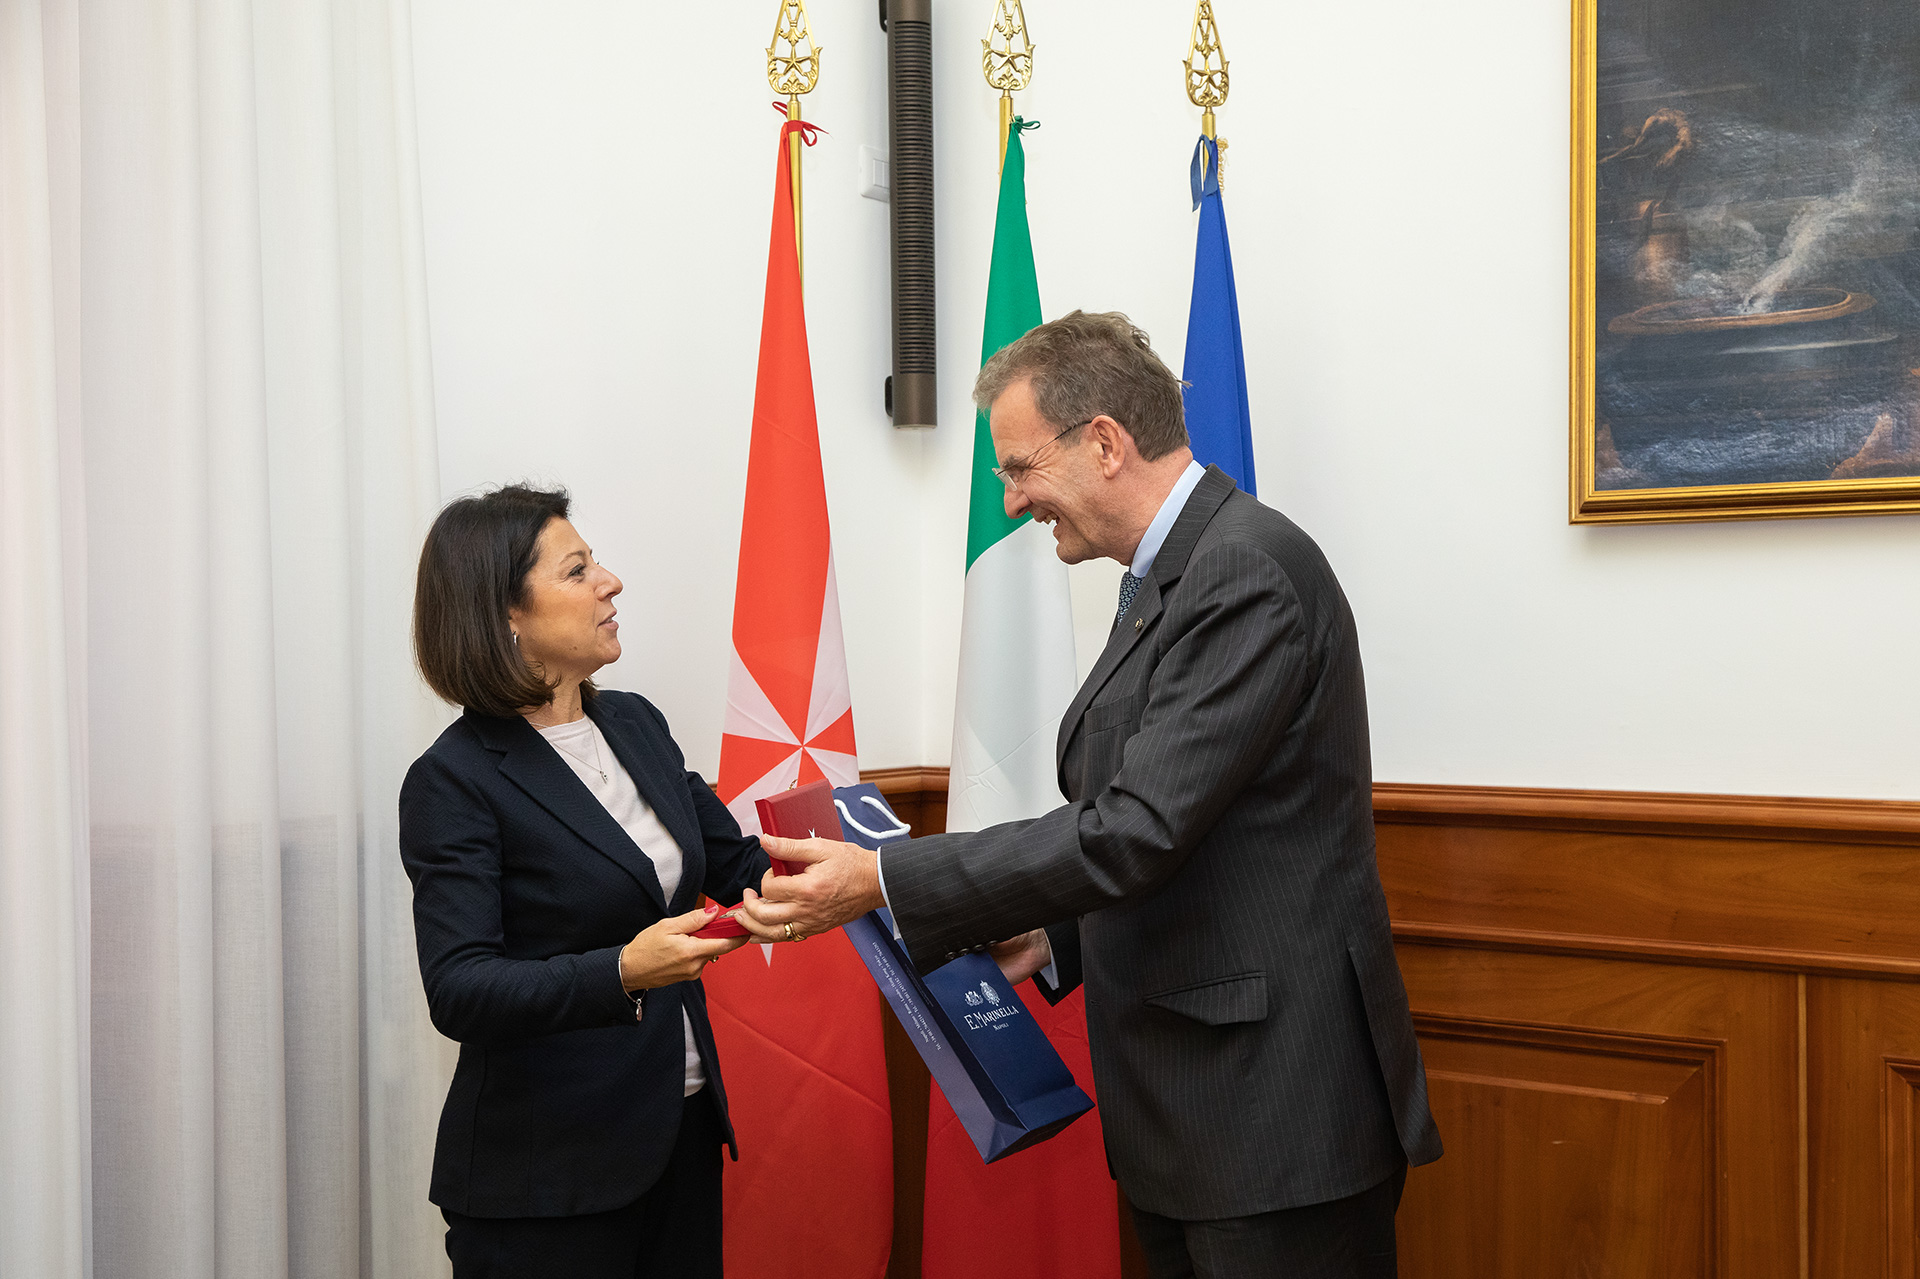 Le ministère italien des Transports et l’Ordre souverain de Malte signent un accord pour une action commune de secours en mer